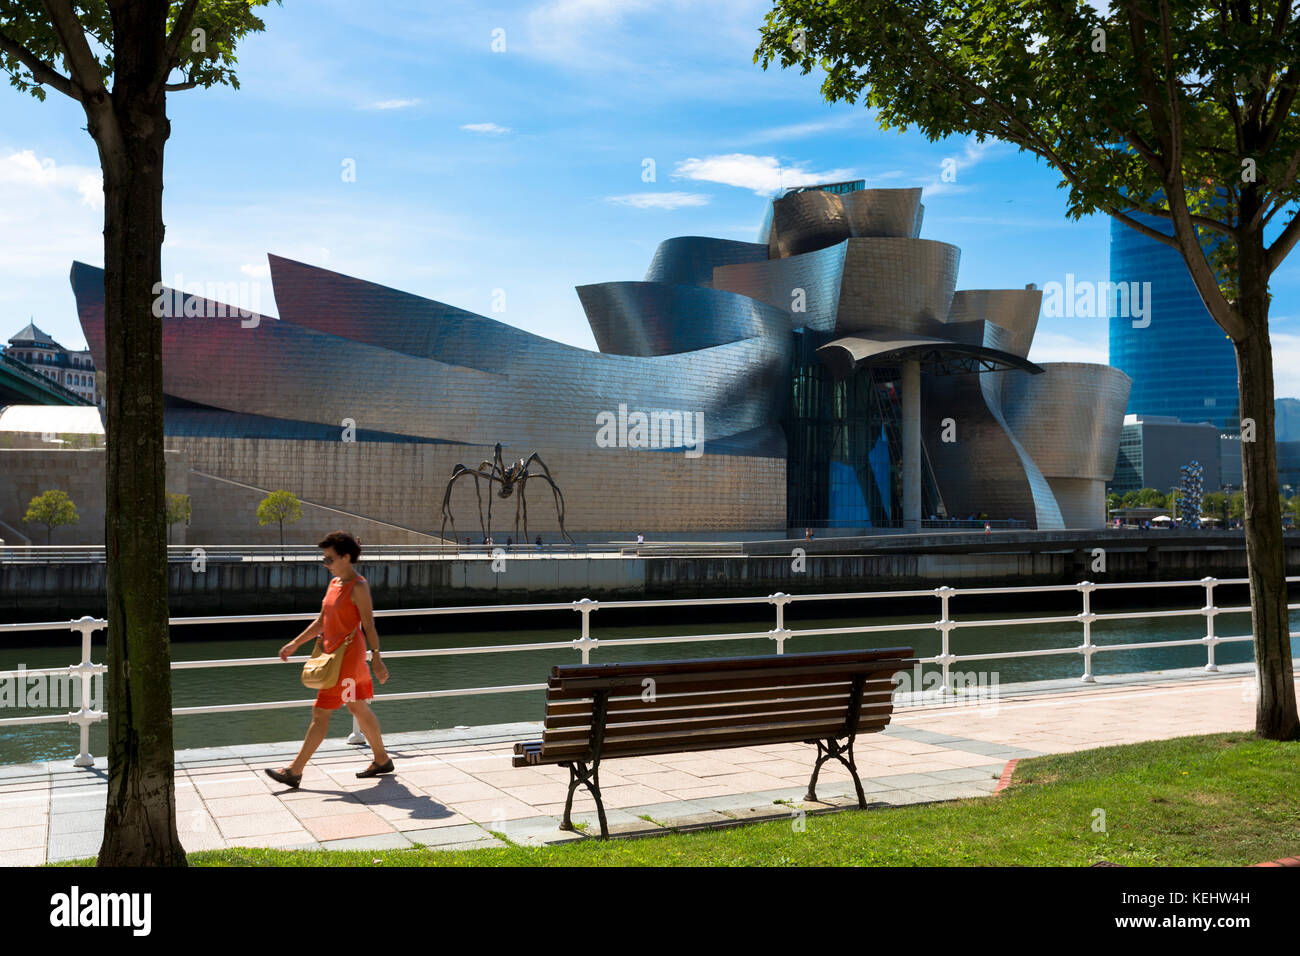 Une femme passe devant le musée Guggenheim de l'architecte Frank Gehry, à travers la rivière Nervion à Bilbao, pays basque, Espagne Banque D'Images